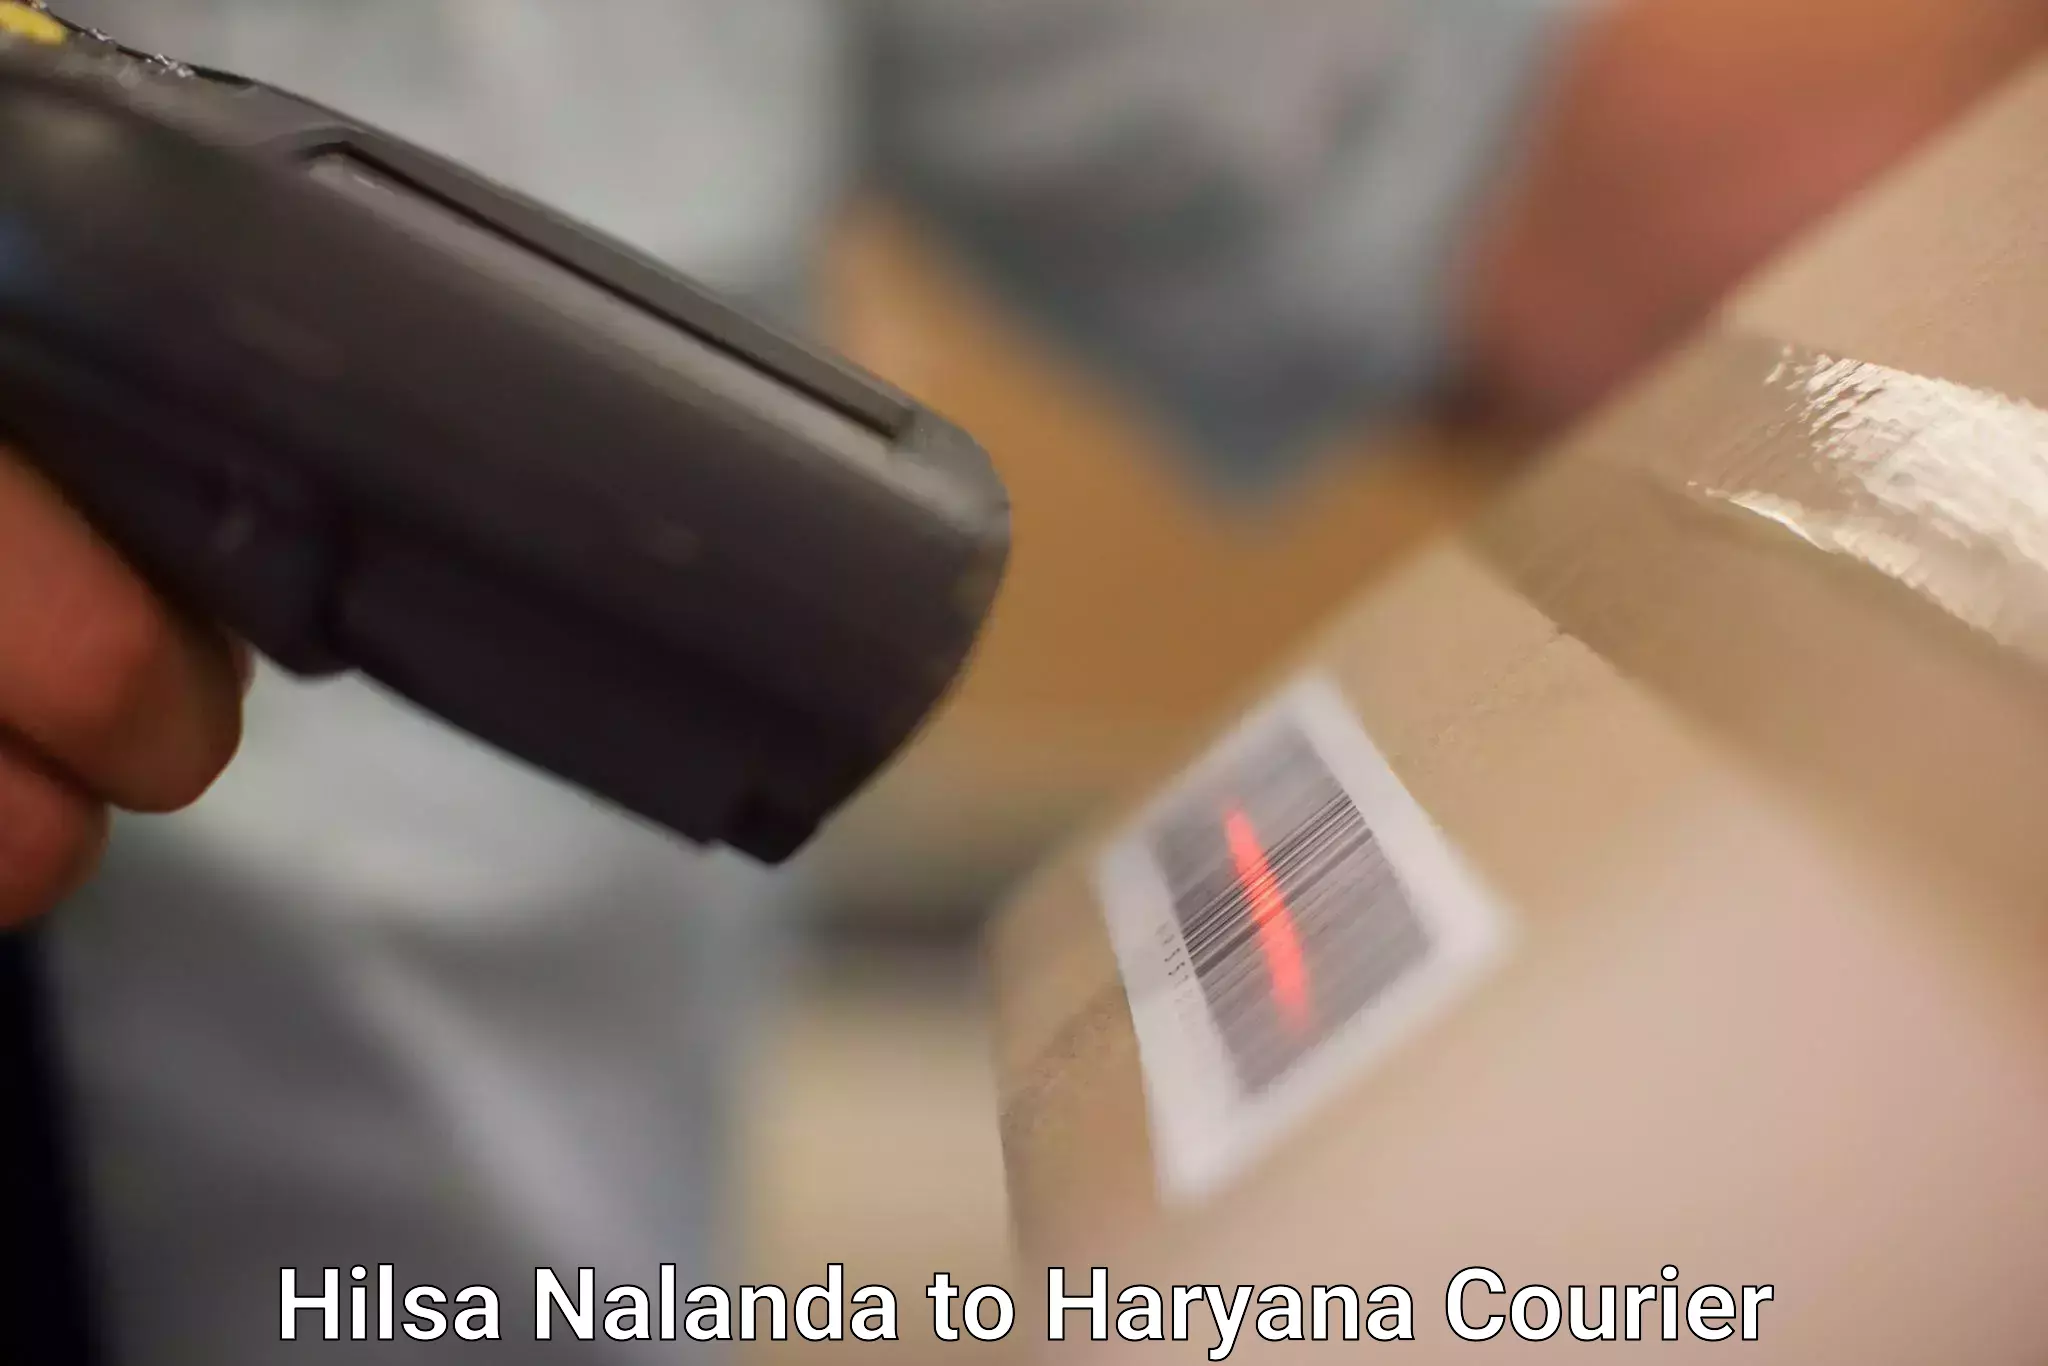 Quality courier services Hilsa Nalanda to Haryana